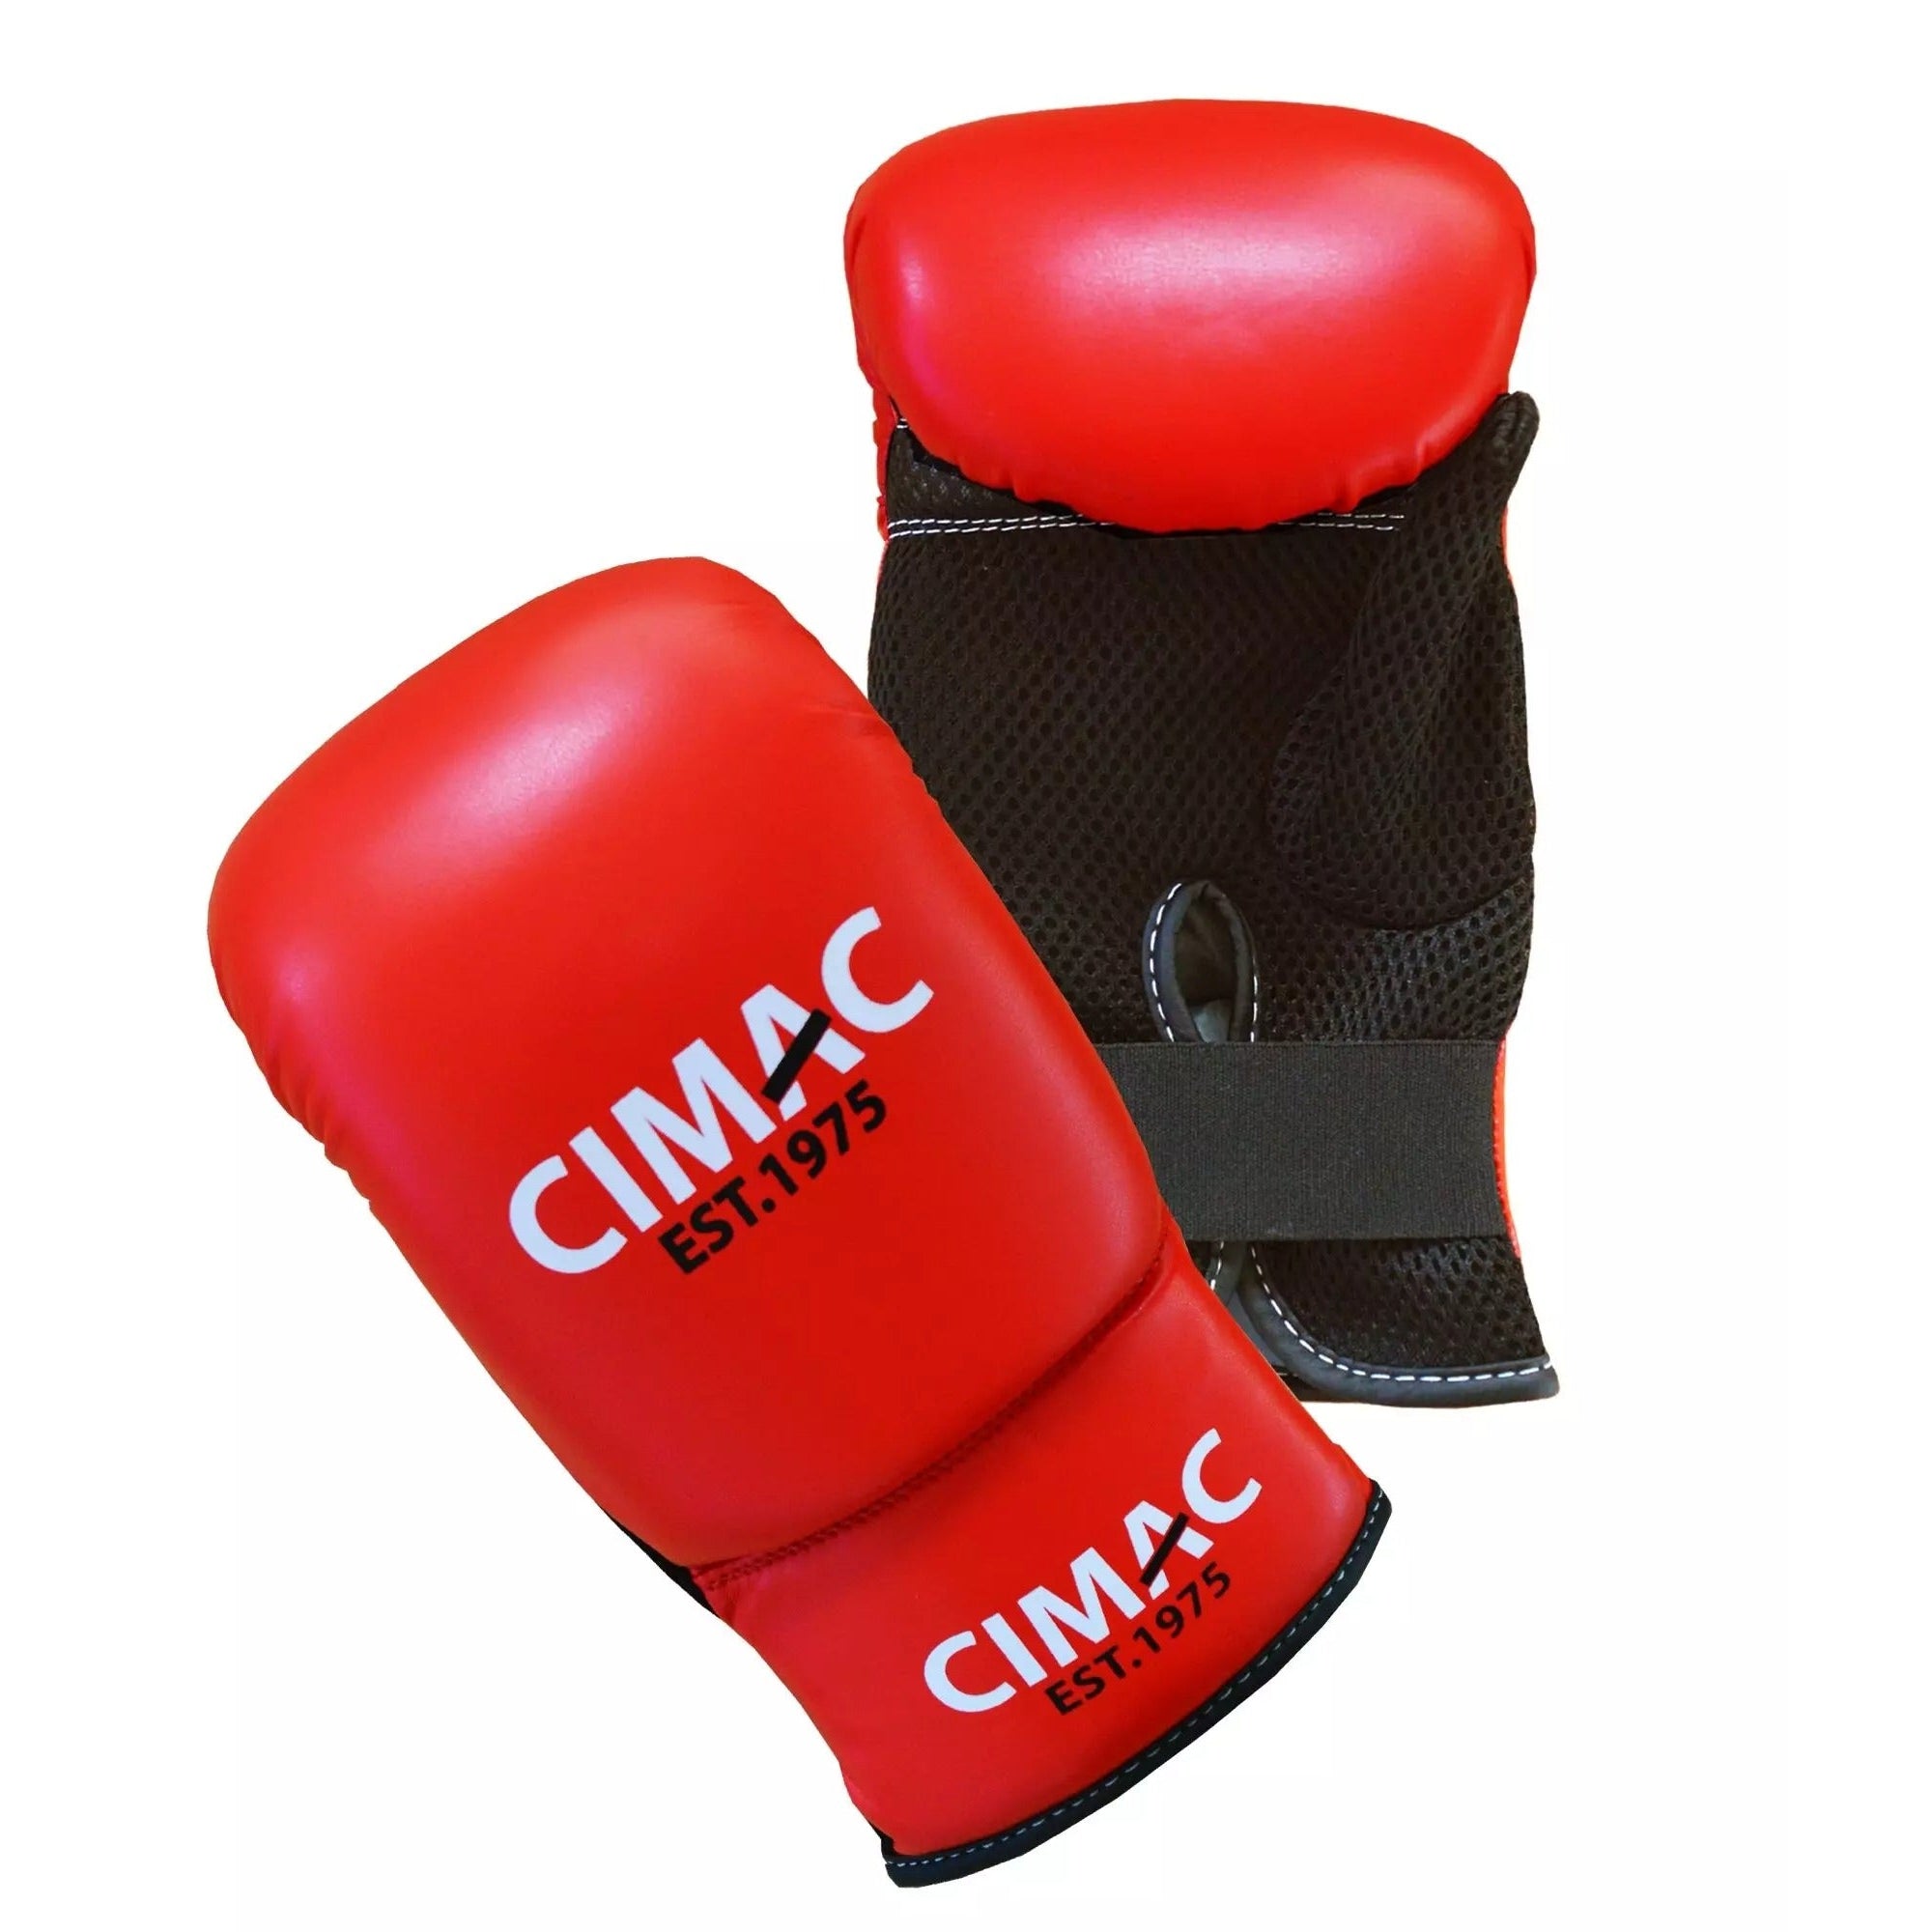 Cimac Bag Gloves Breathable Boxing Punchbag Training Red